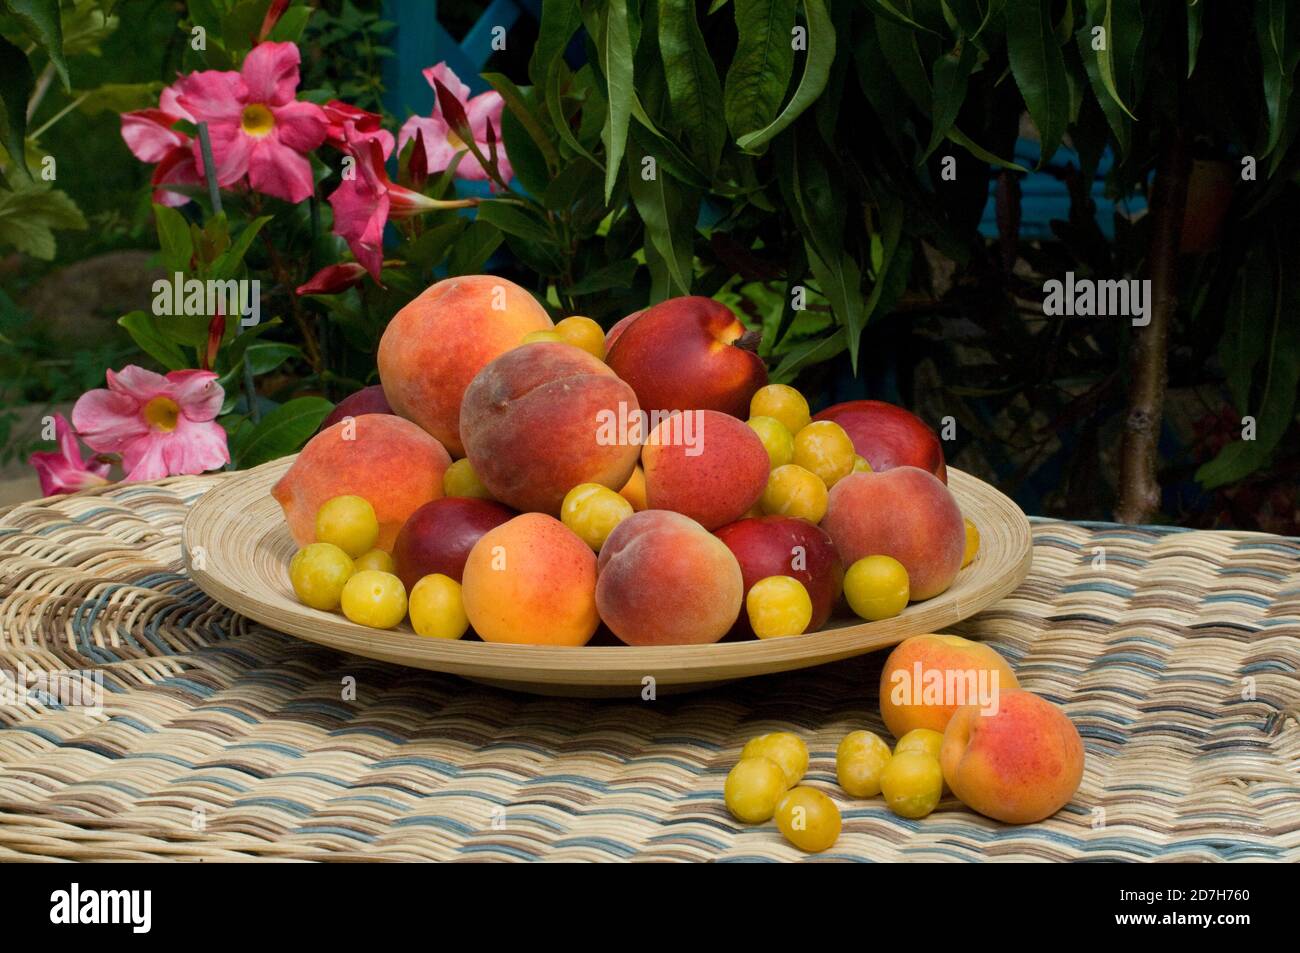 Apricot (Prunus armeniaca), Nectarine (Prunus persica), Peach (Prunus persica), Plum 'Mirabelle de Nancy' (Prunus domestica) in a dish Stock Photo